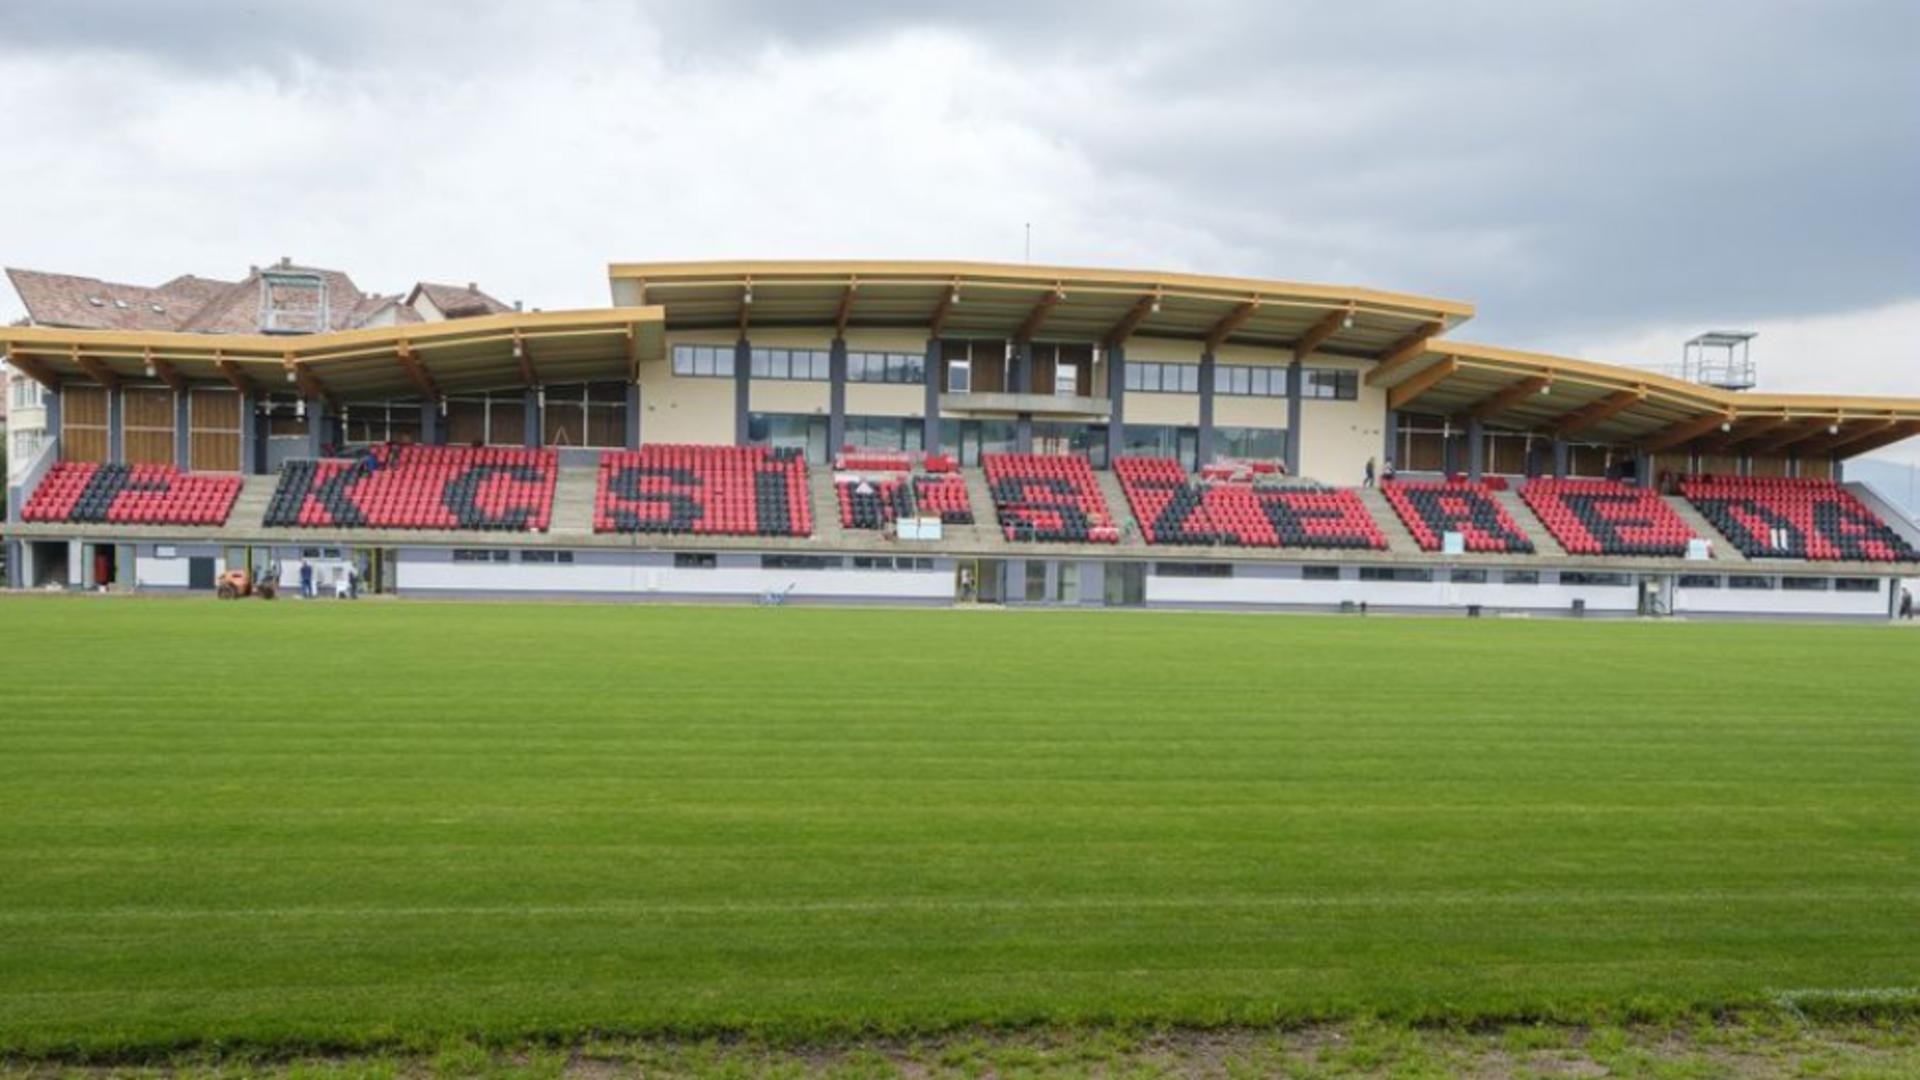 Stadion inaugurat cu echipa așa zisului Ținut Secuiesc